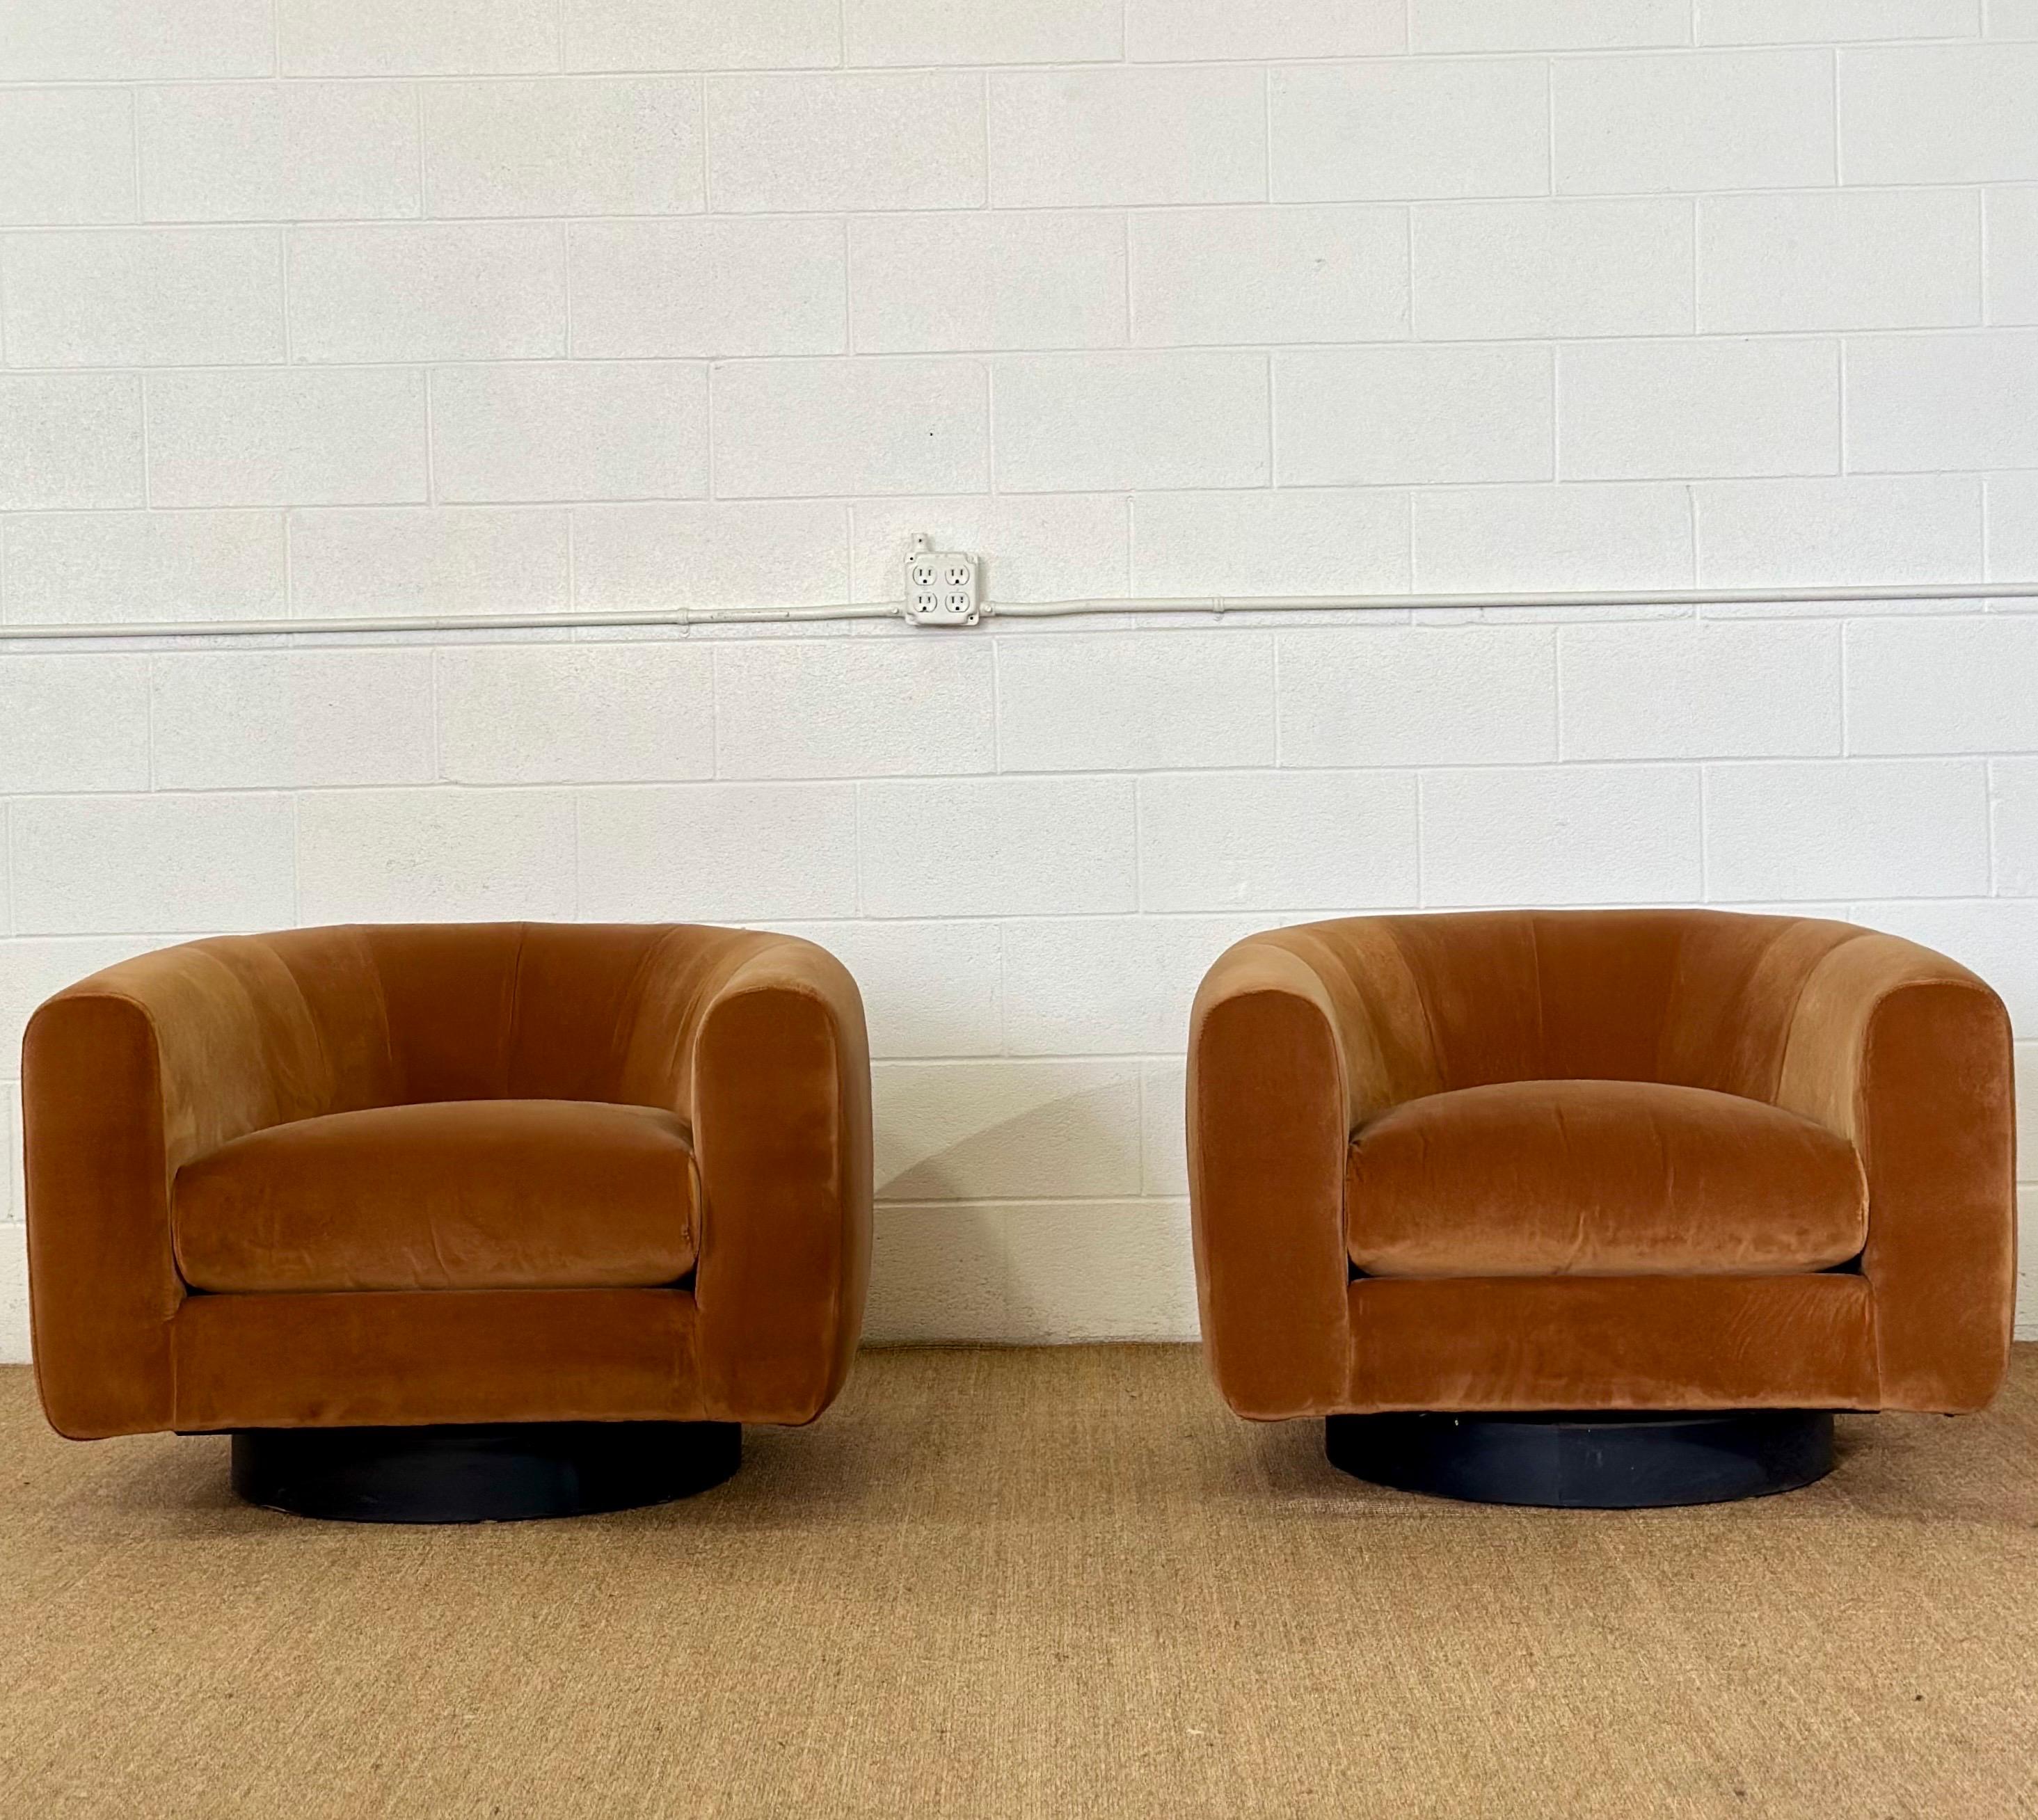 Wir freuen uns sehr, Ihnen ein atemberaubendes Paar Stühle mit Tonnenlehne im Stil von Milo Baughman aus den 1970er Jahren anbieten zu können.  Jeder der exquisiten Stühle ist auf einem eleganten schwarzen Holzsockel verankert, der den Eindruck